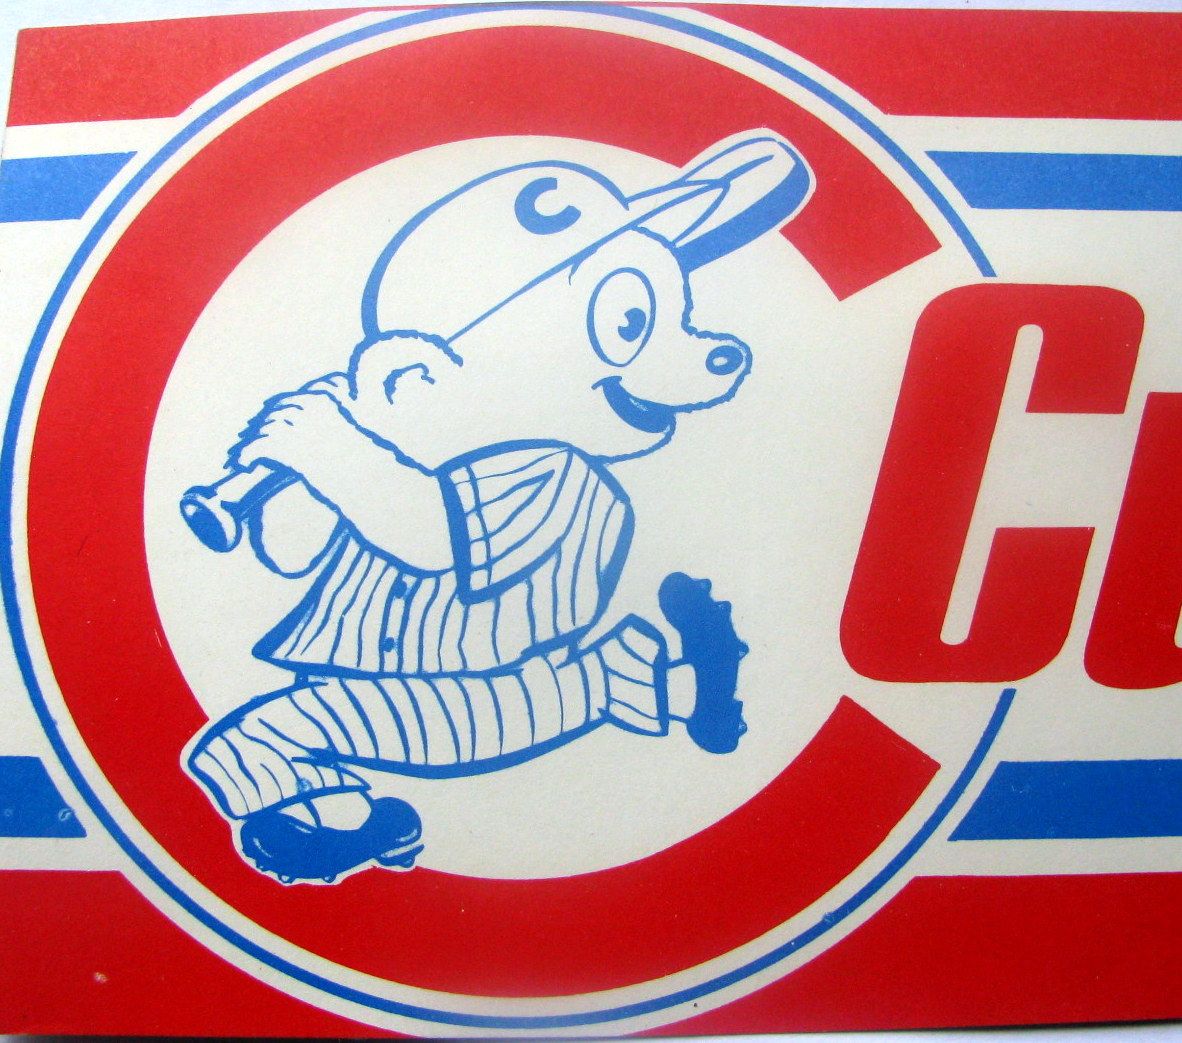 chicago cubs vintage